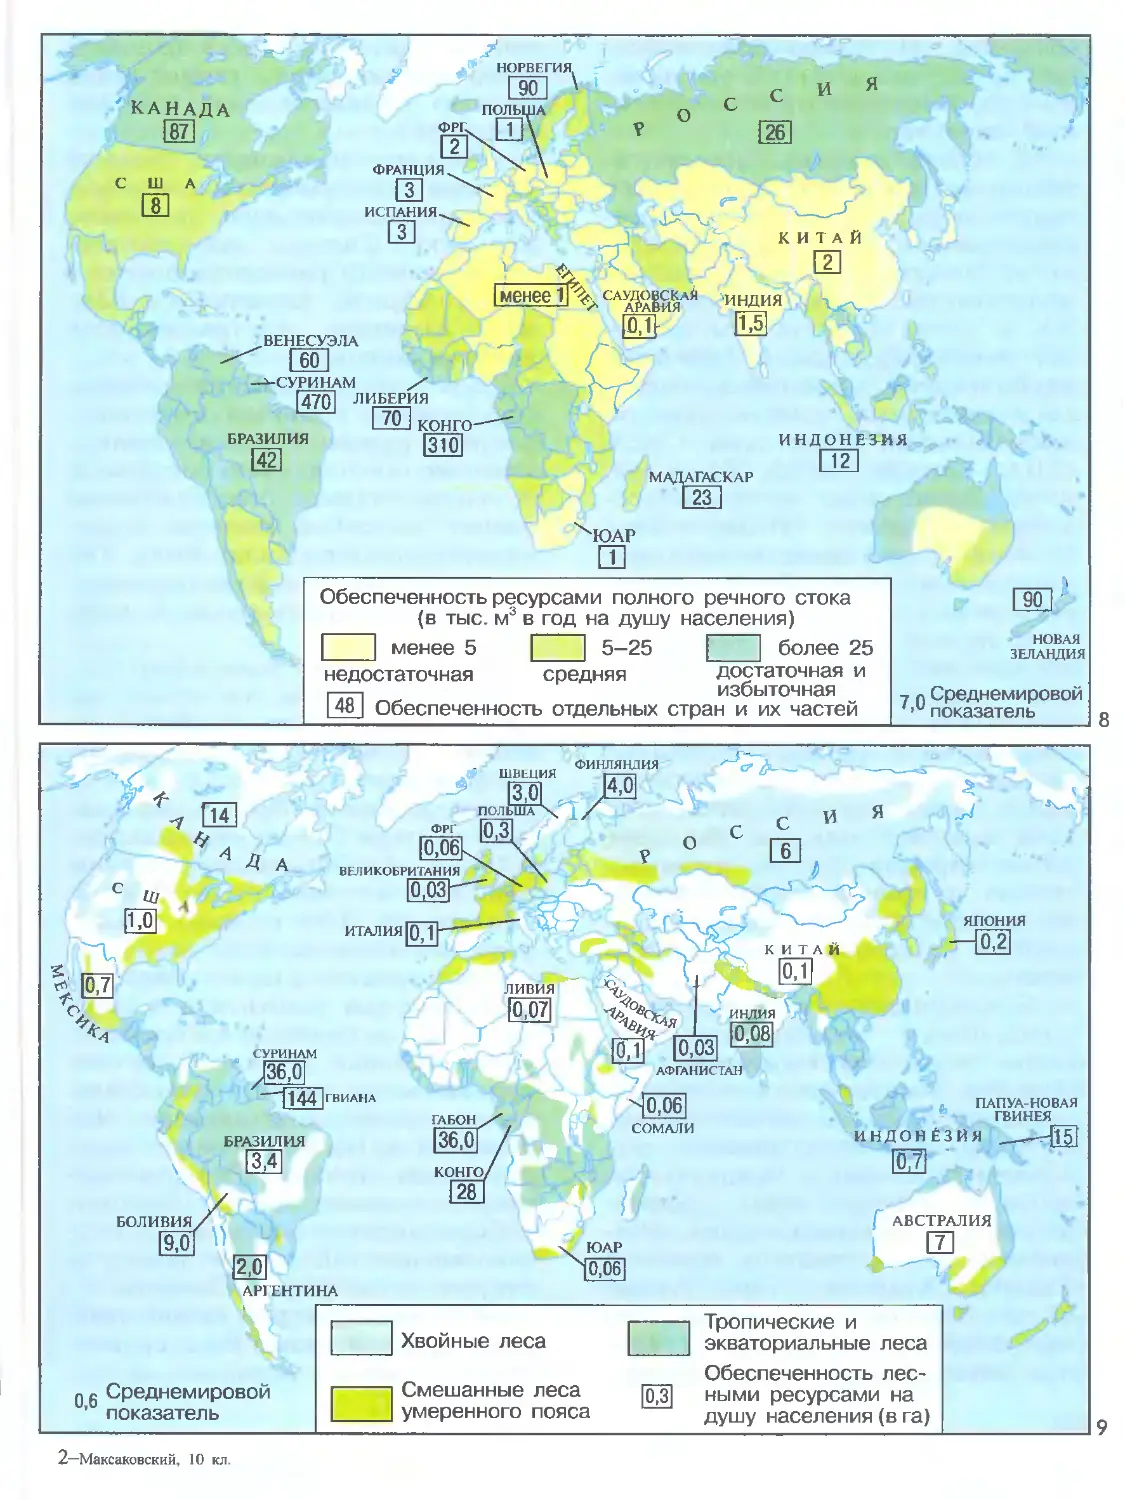 Географические различия в обеспеченности. Карта обеспеченности лесными ресурсами регионы страны. Обеспеченность ресурсами полного речного стока.